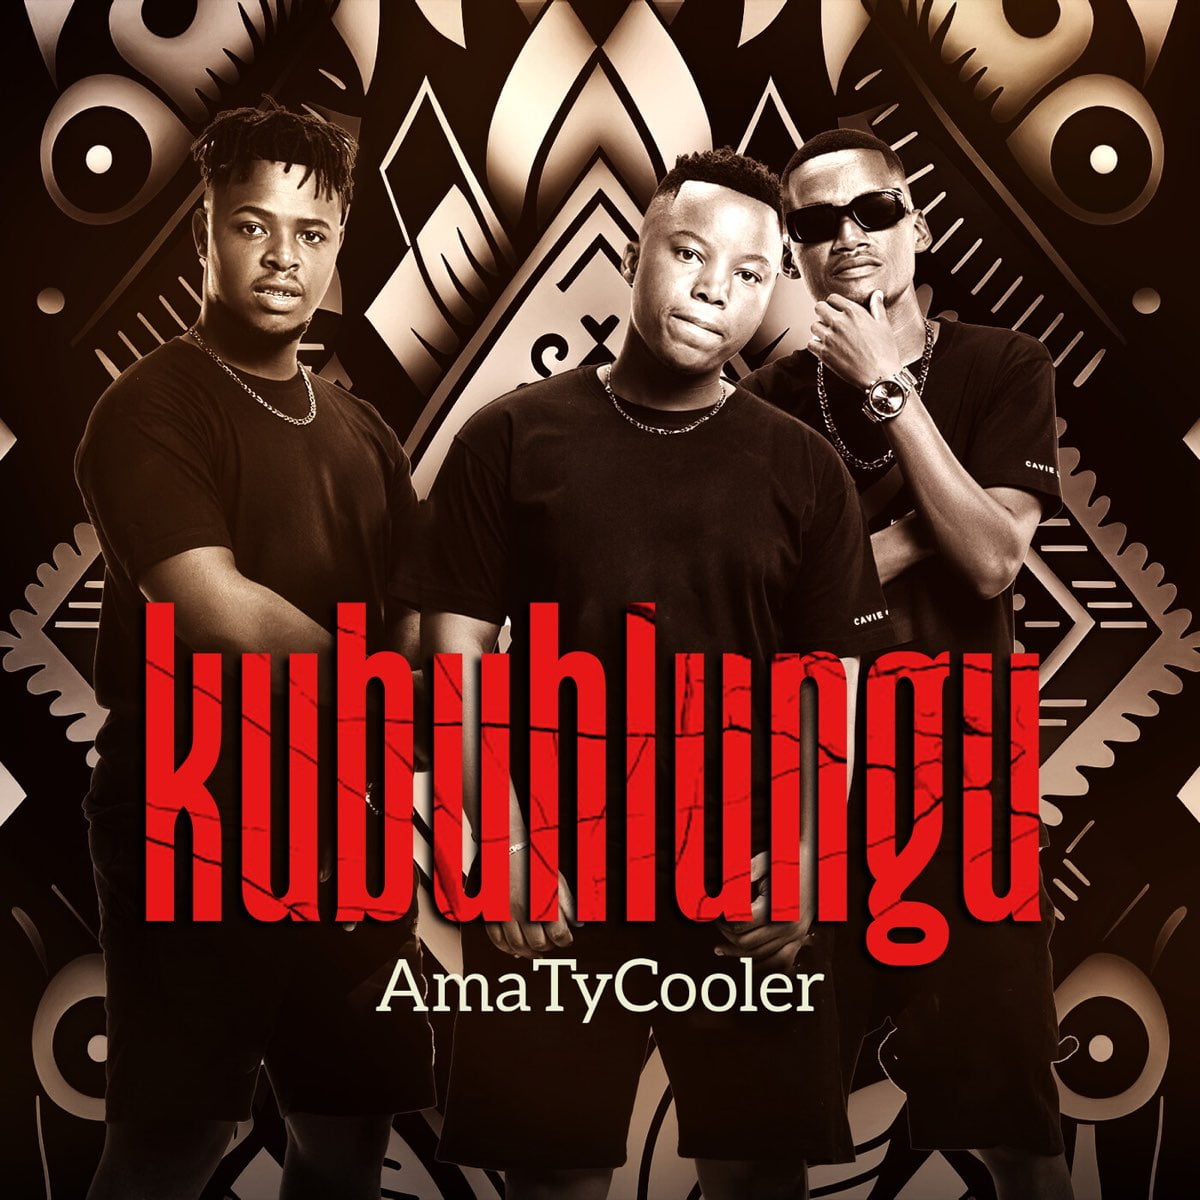 AmaTycooler - Kubuhlungu mp3 download free lyrics